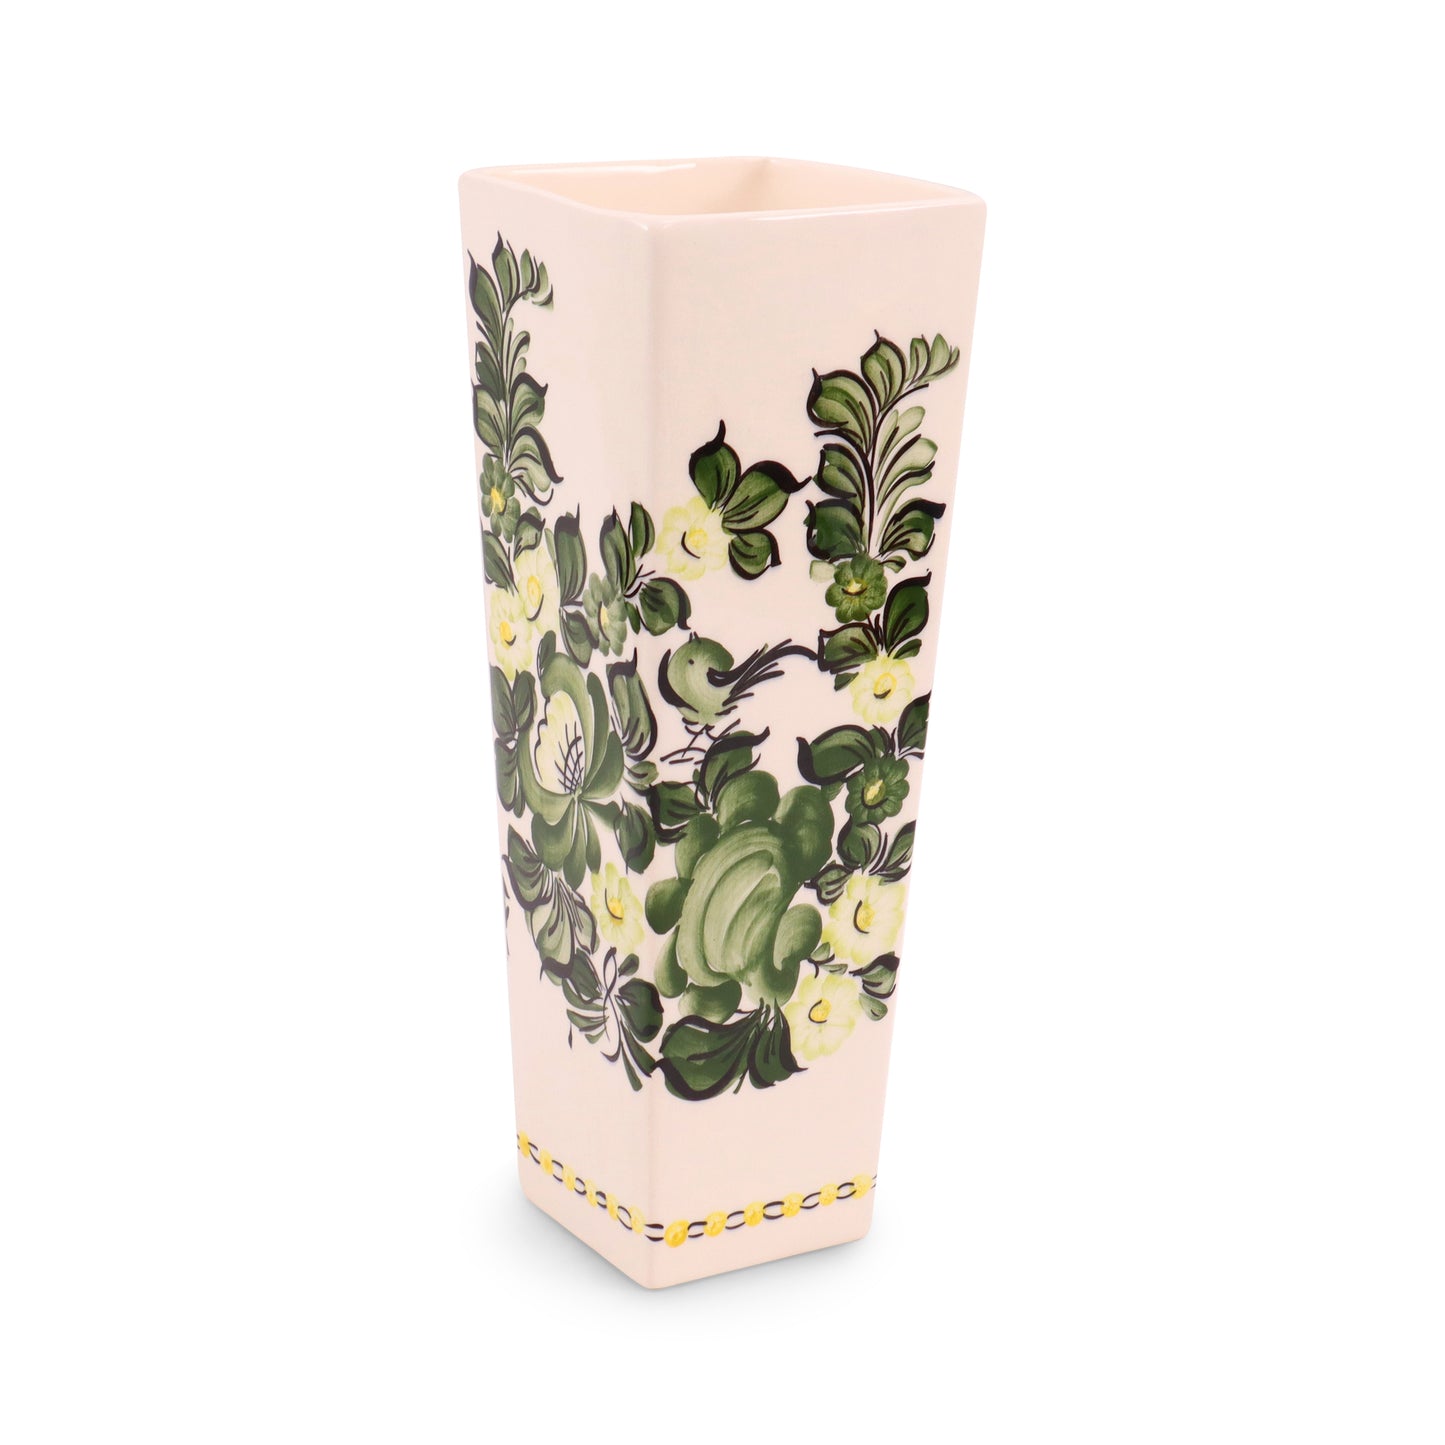 3.5"x10" Rectangular Vase. Pattern: Green